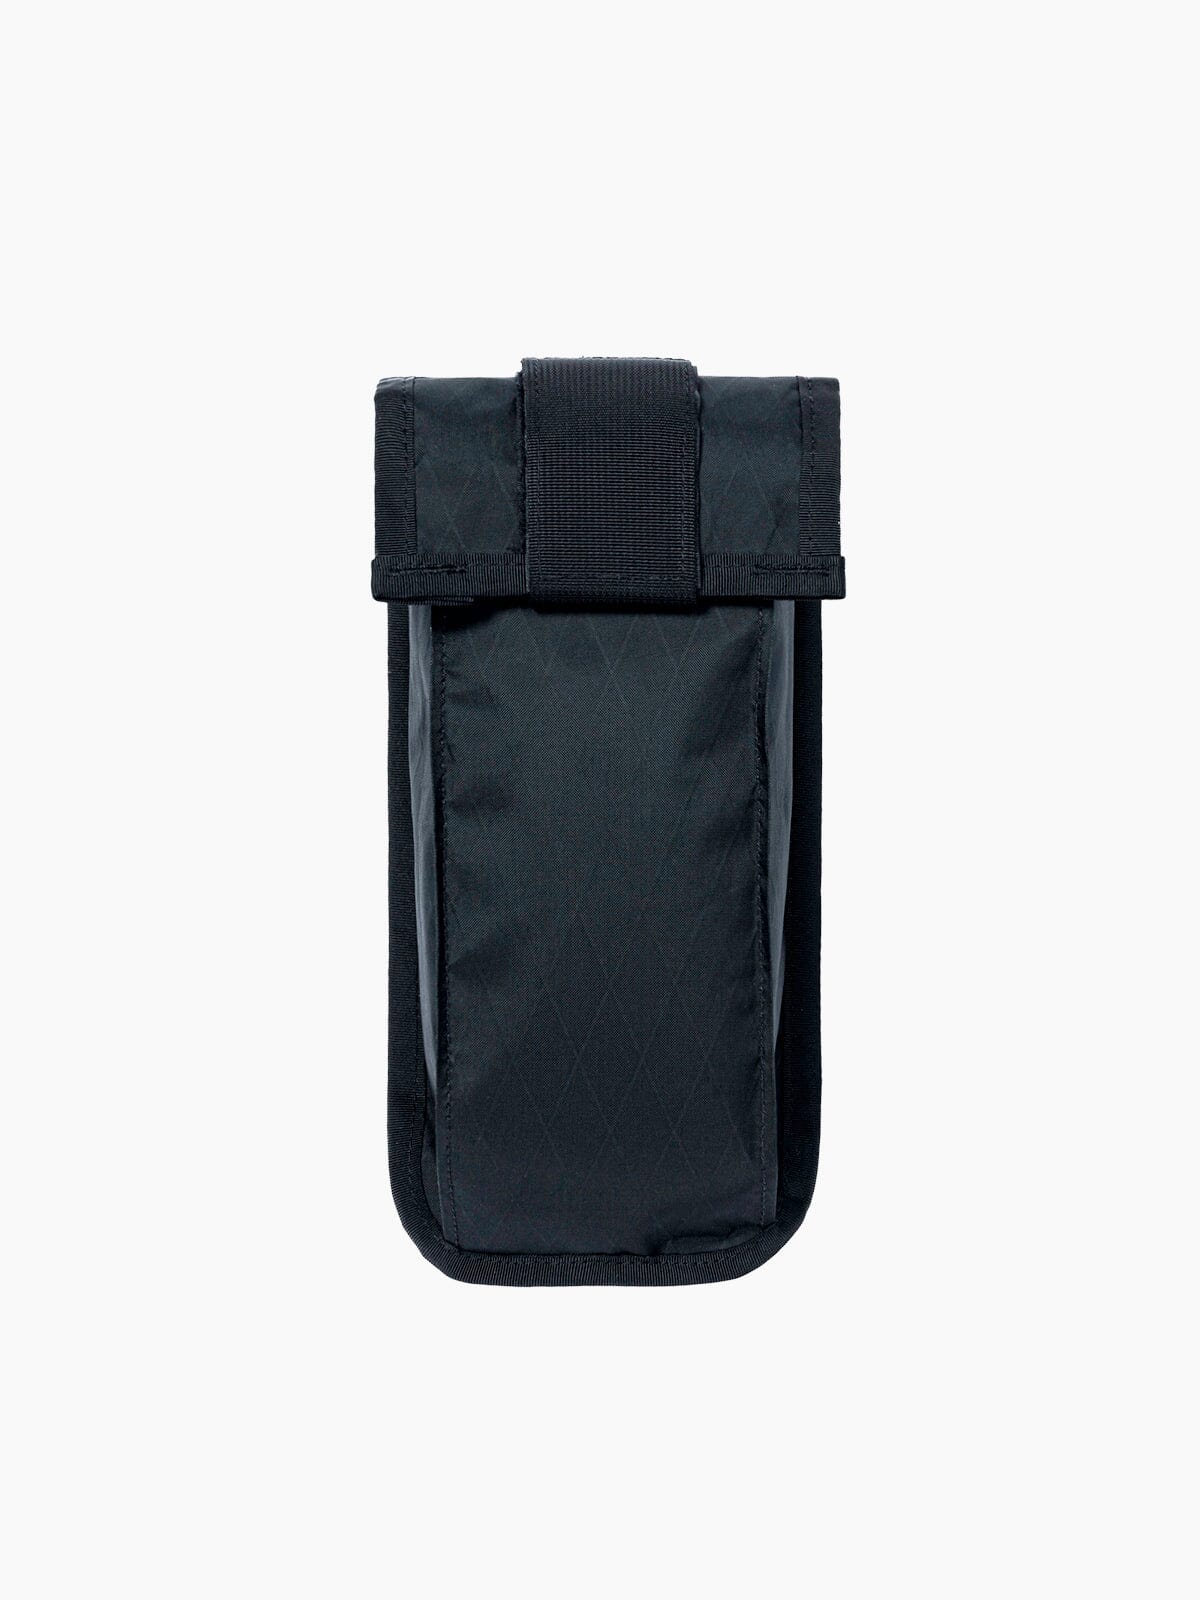 Arkiv Vertical Rolltop Pocket by Mission Workshop - Weerbestendige tassen & technische kleding - San Francisco & Los Angeles - Gebouwd om te weerstaan - Voor altijd gegarandeerd